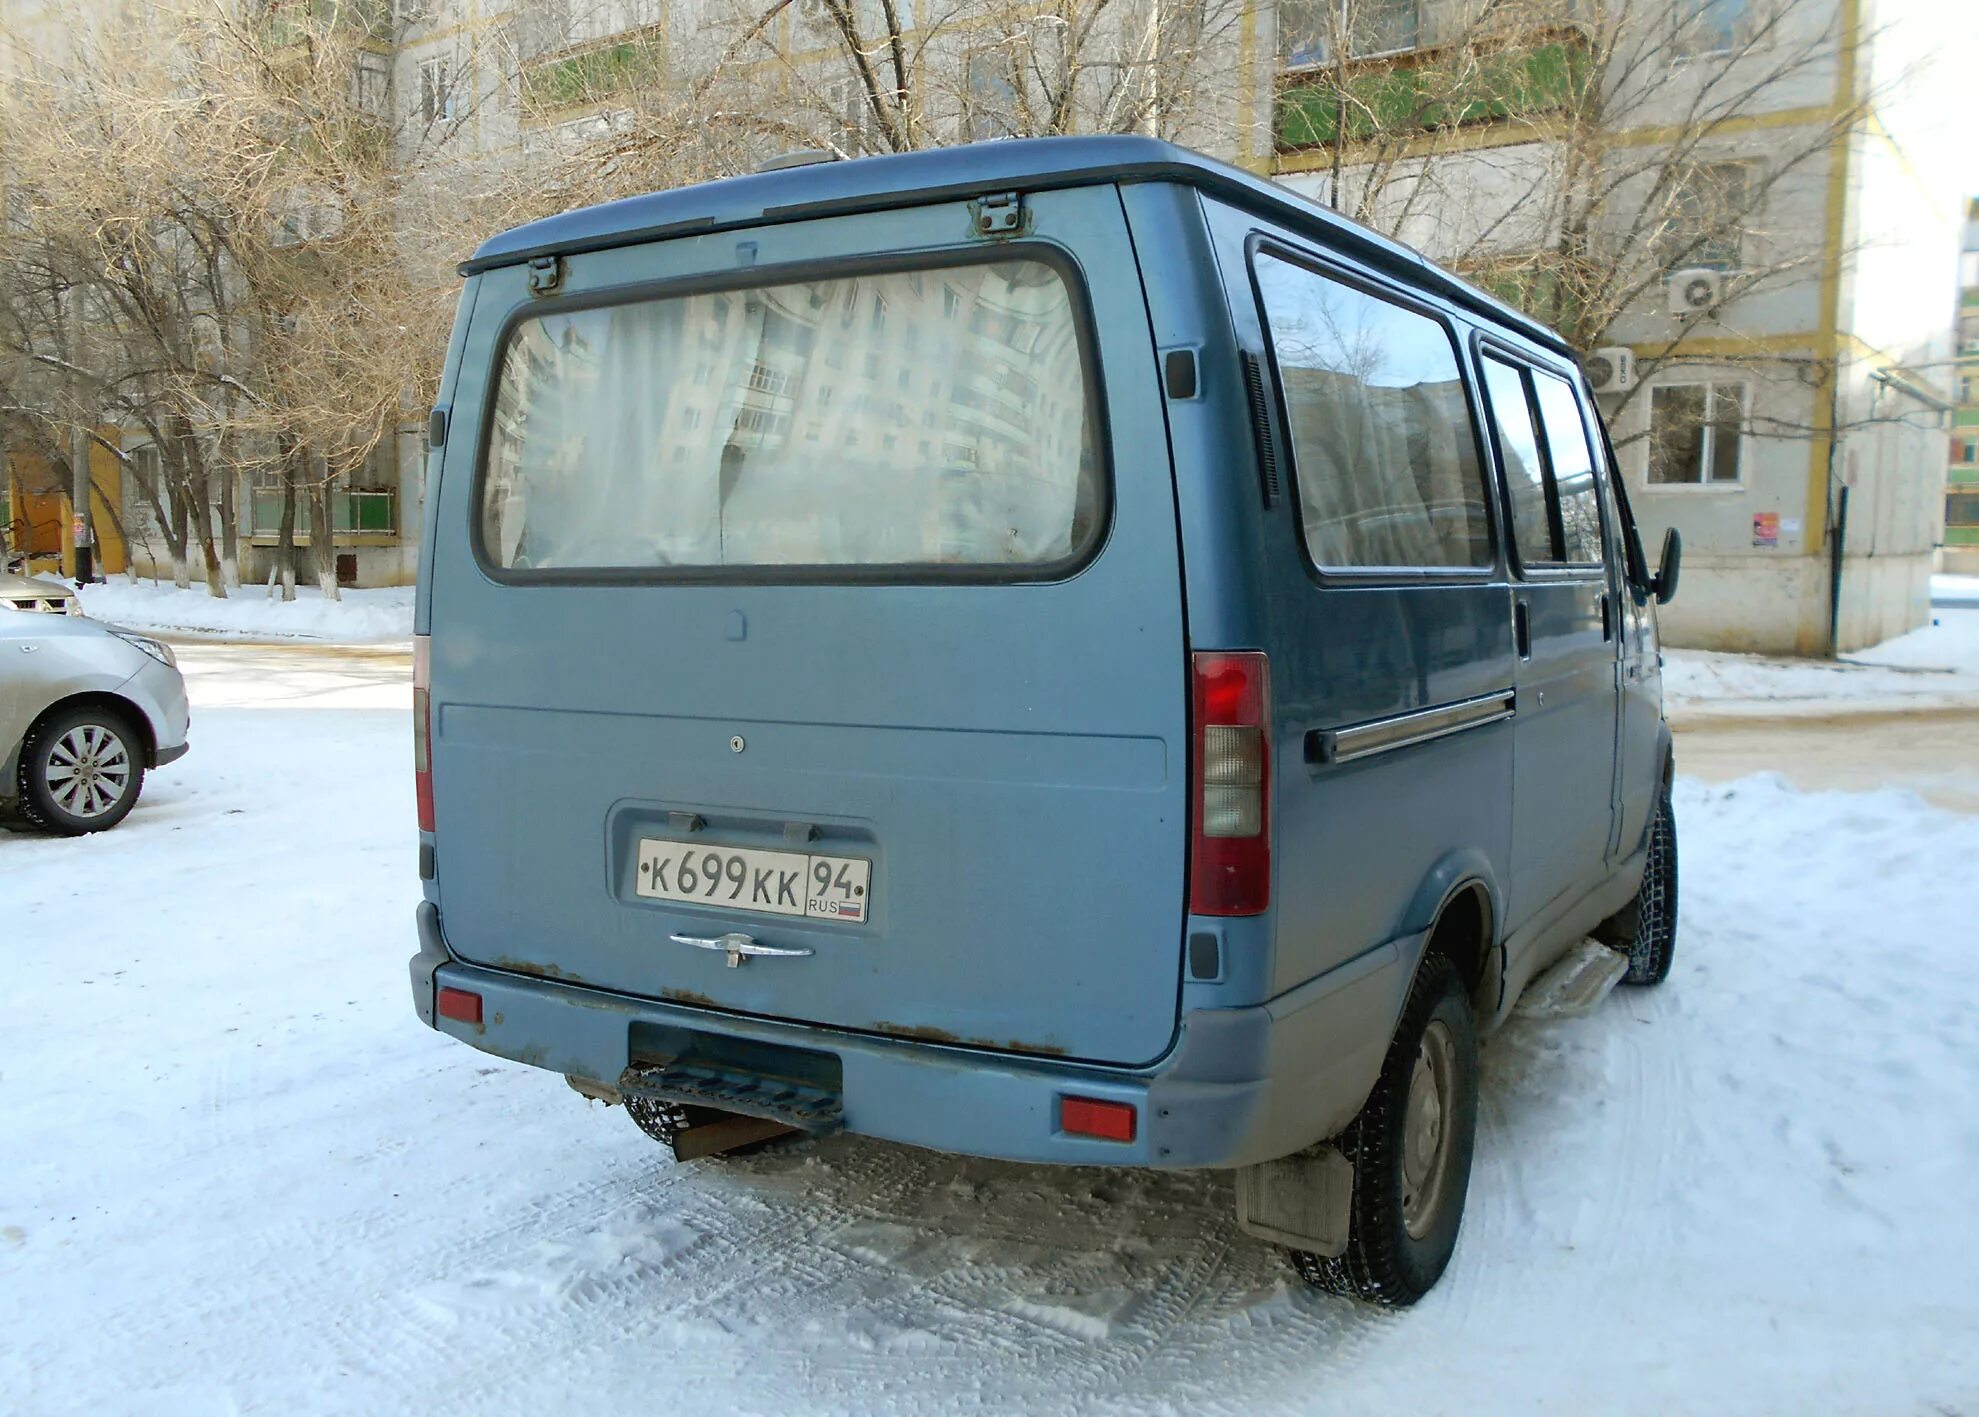 ГАЗ-2217 — минивэн «Соболь Баргузин». ГАЗ 22177 Соболь Баргузин. ГАЗ 22177 Соболь Баргузин 7 местная. 22177 Баргузин.